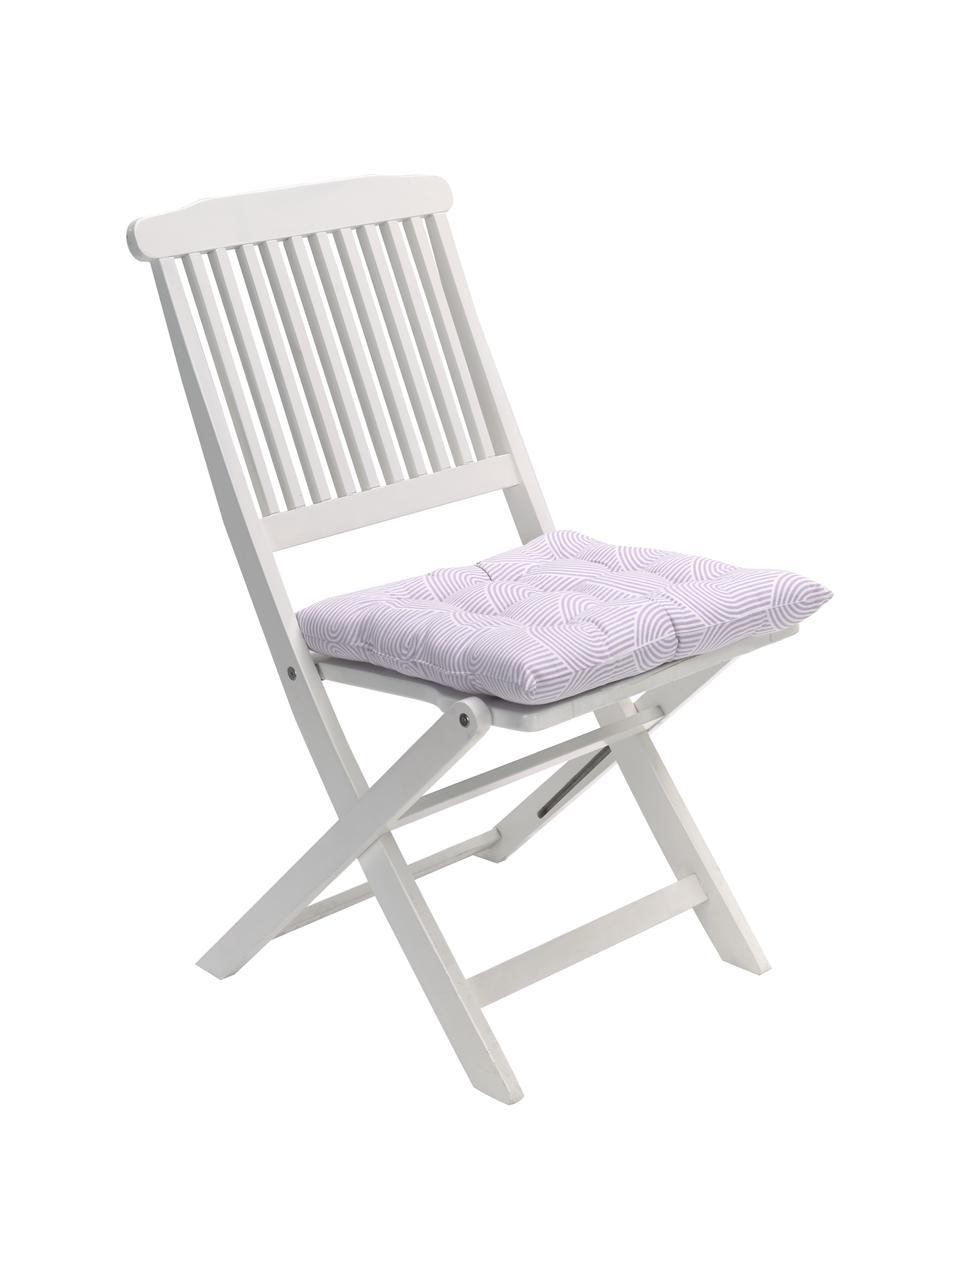 Katoenen stoelkussen Arc in lila/wit, Bekleding: 100% katoen, Lila, B 40 x L 40 cm